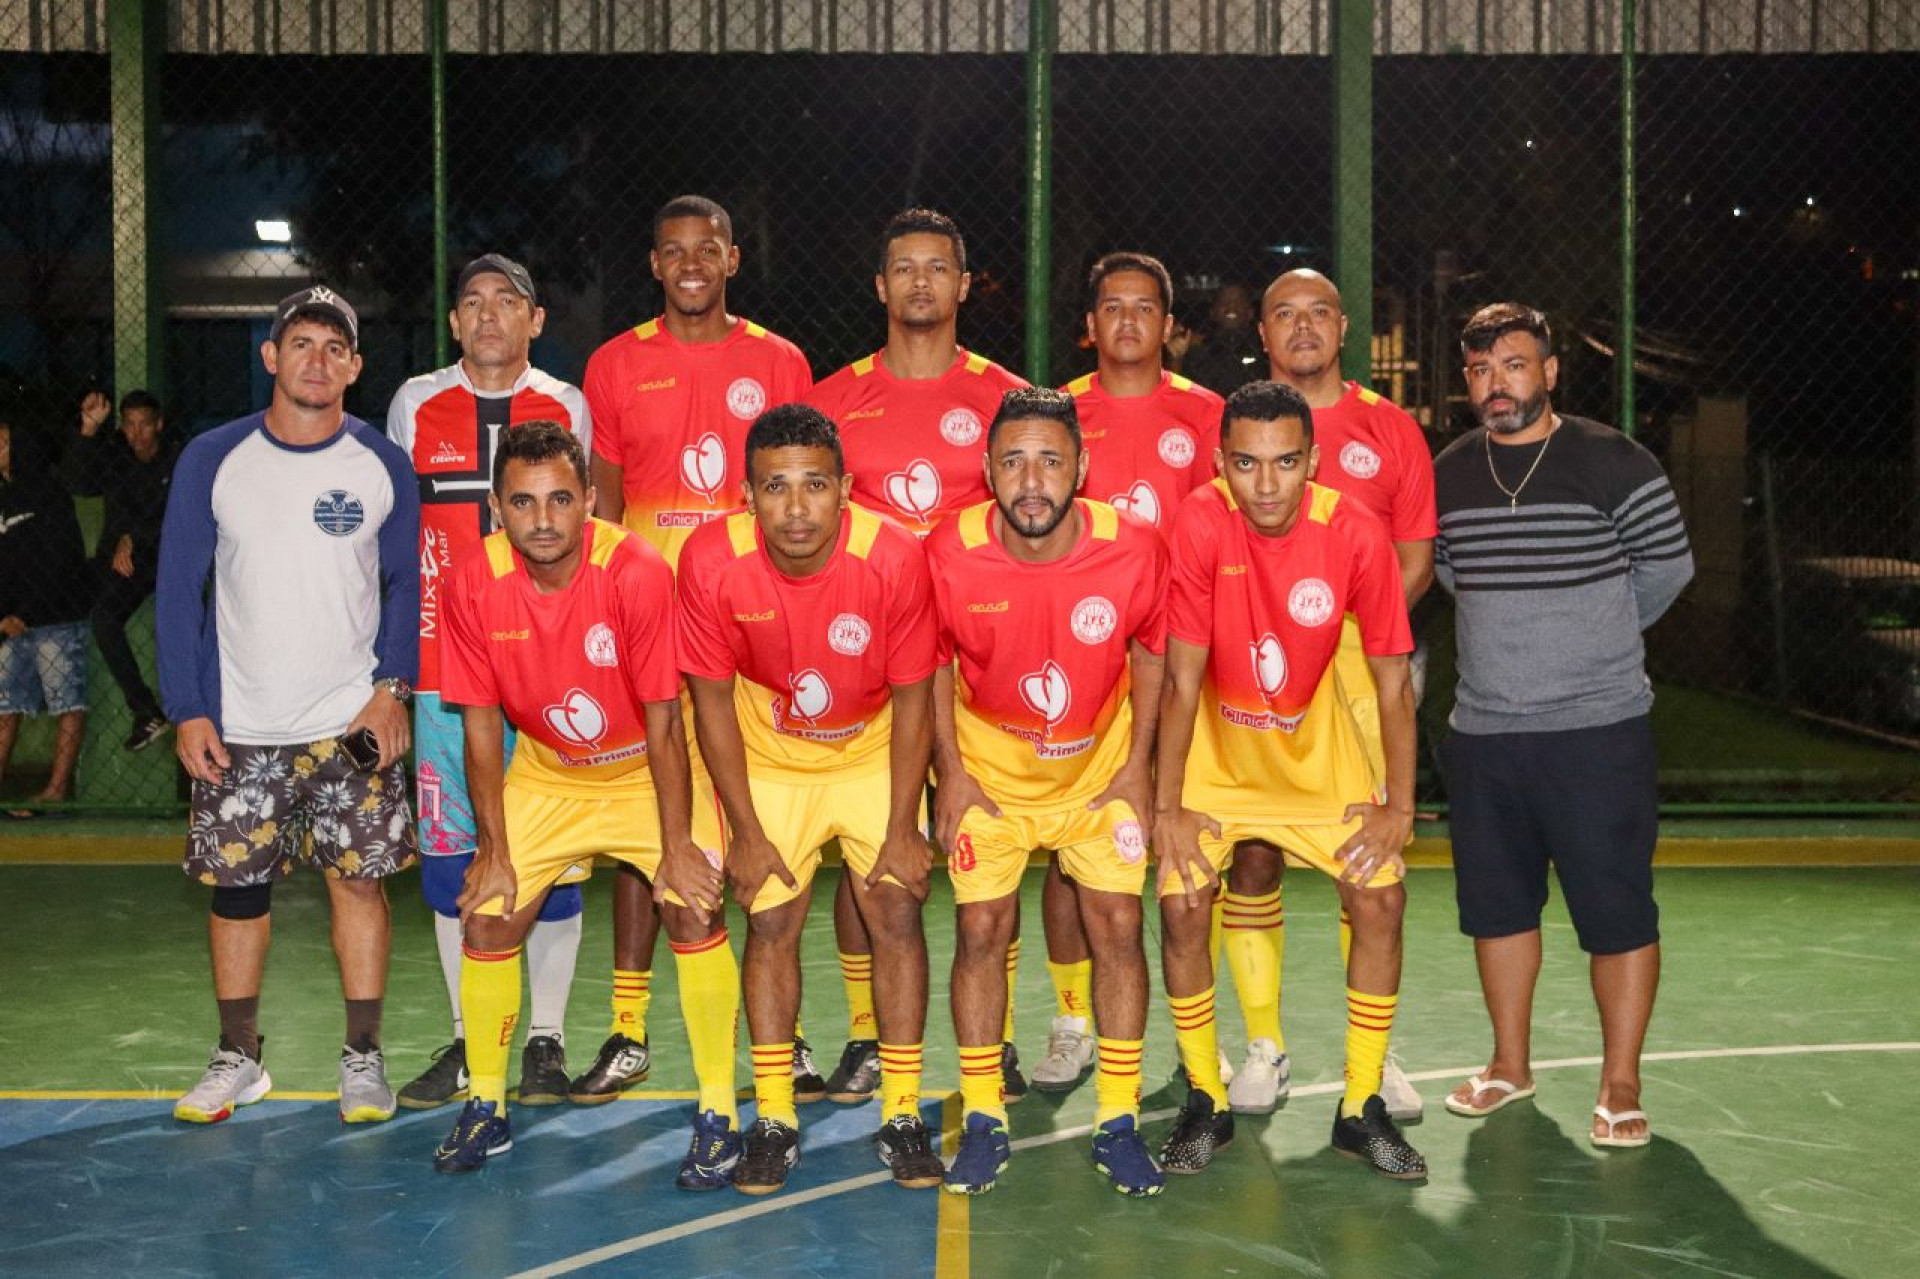 Juventude Frade - Divulgação/Campeonato Futsal